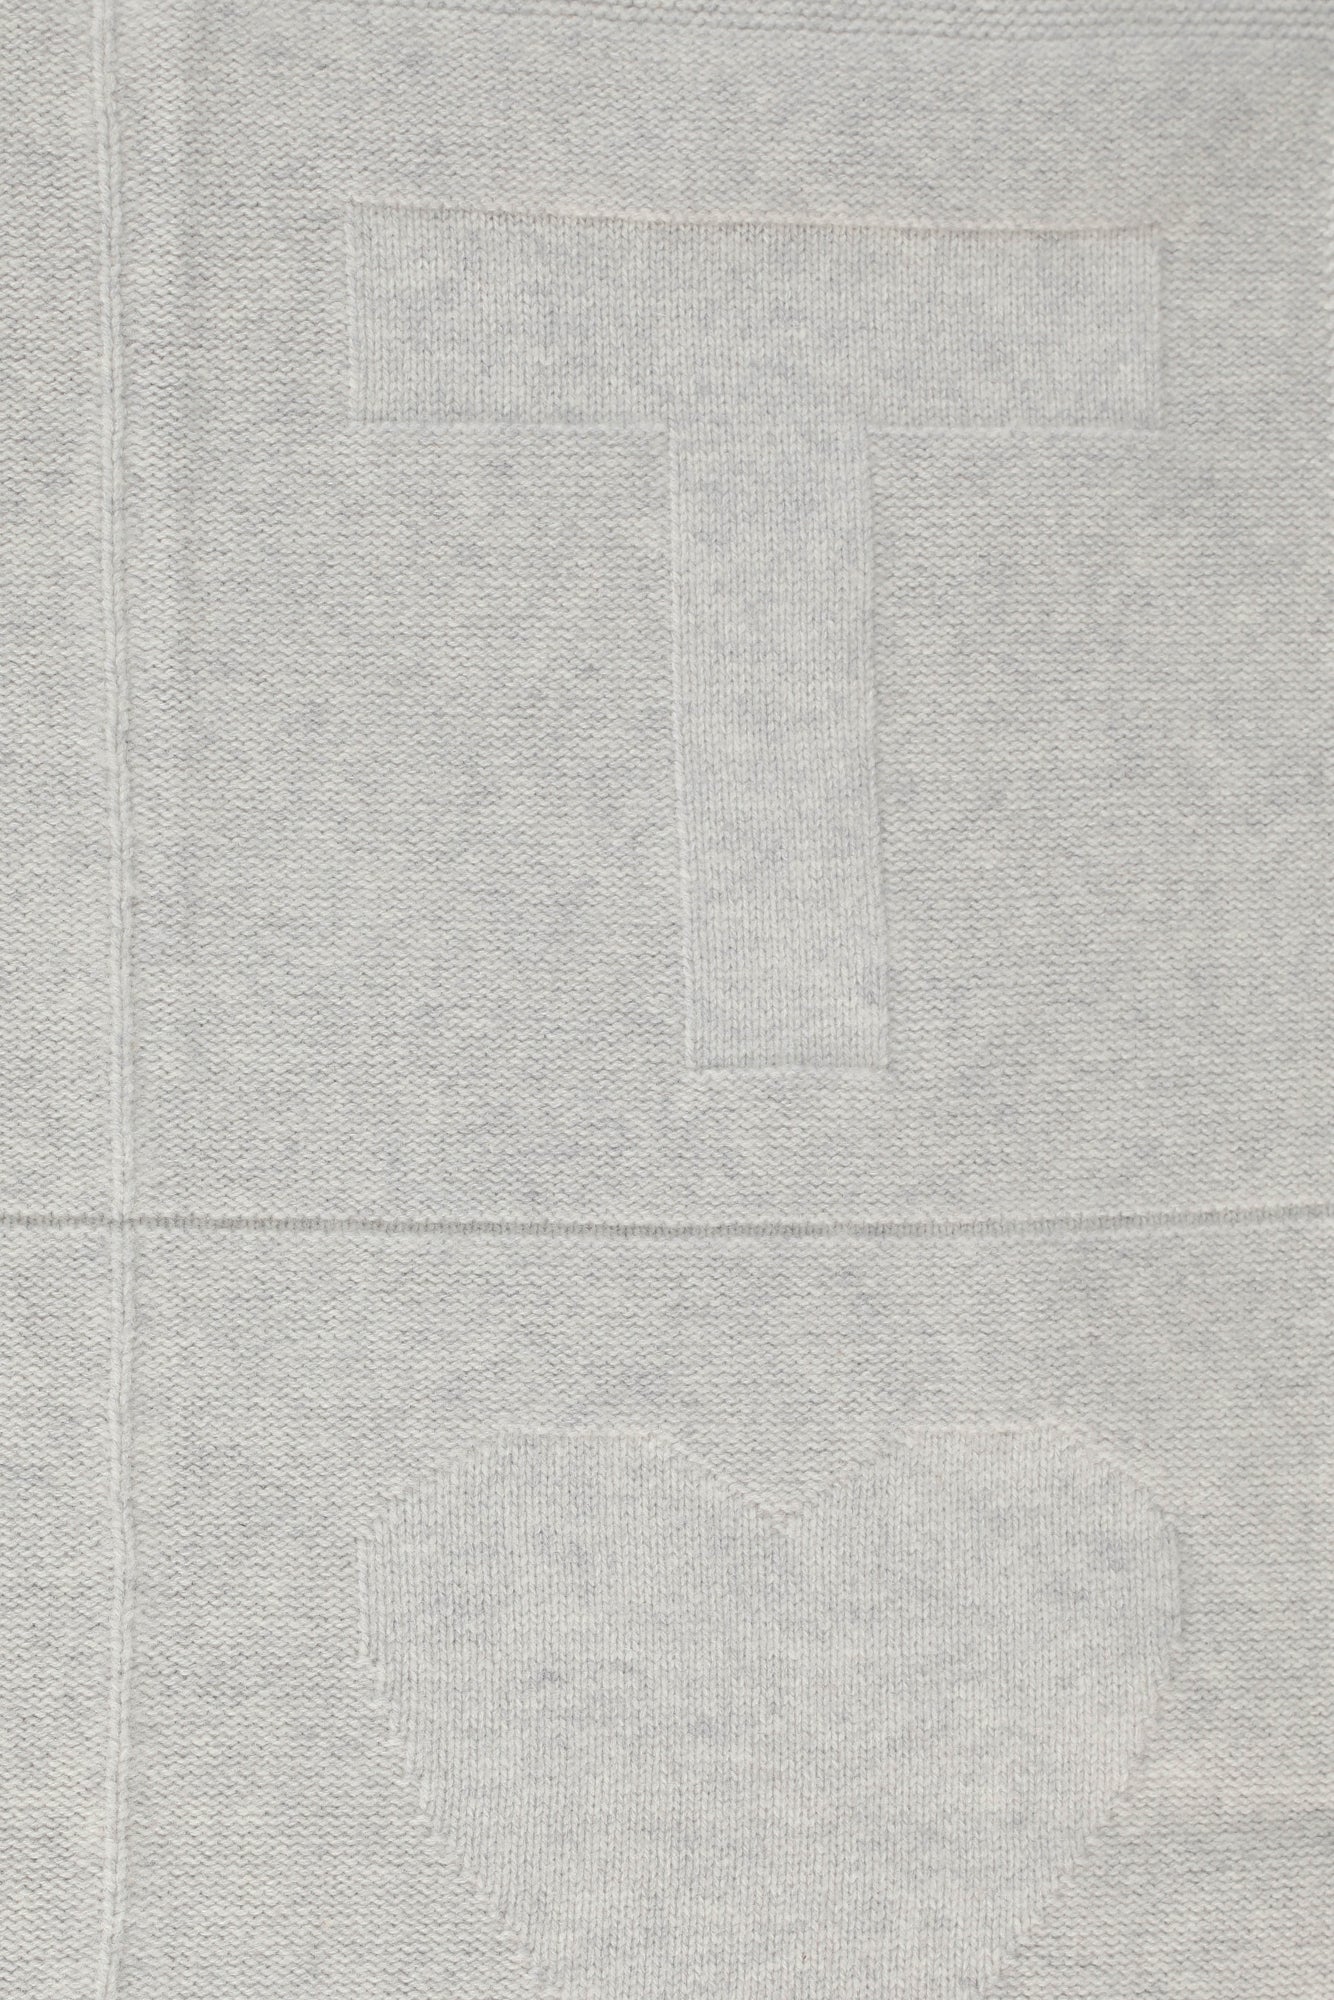 Couverture - patch grise Bébé maille